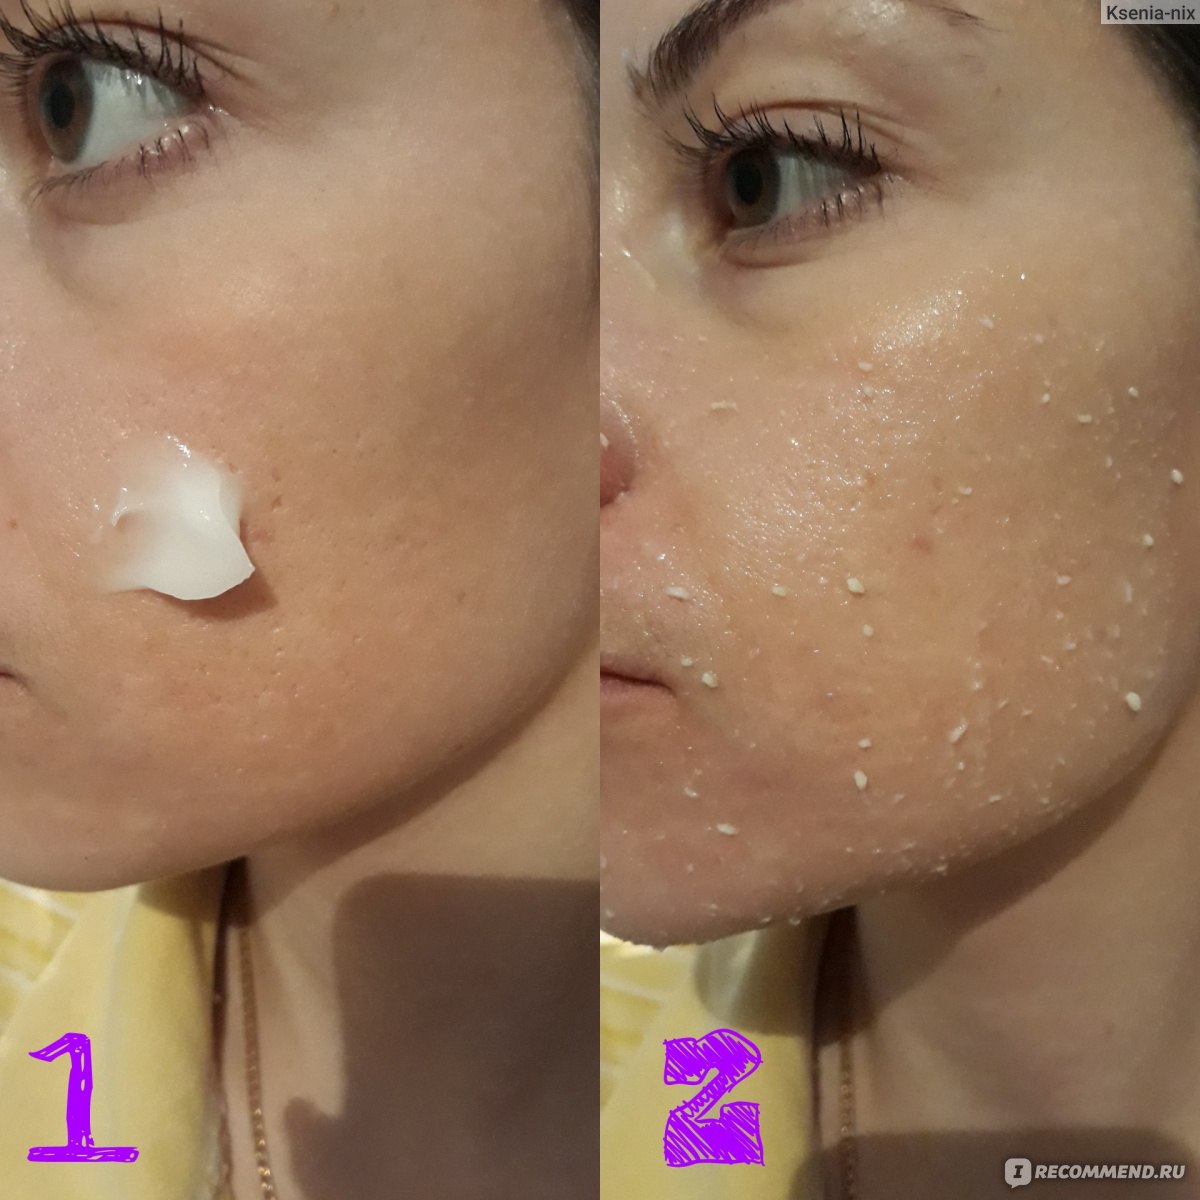 Очищение кожи лица: этапы и правила безопасного очищения